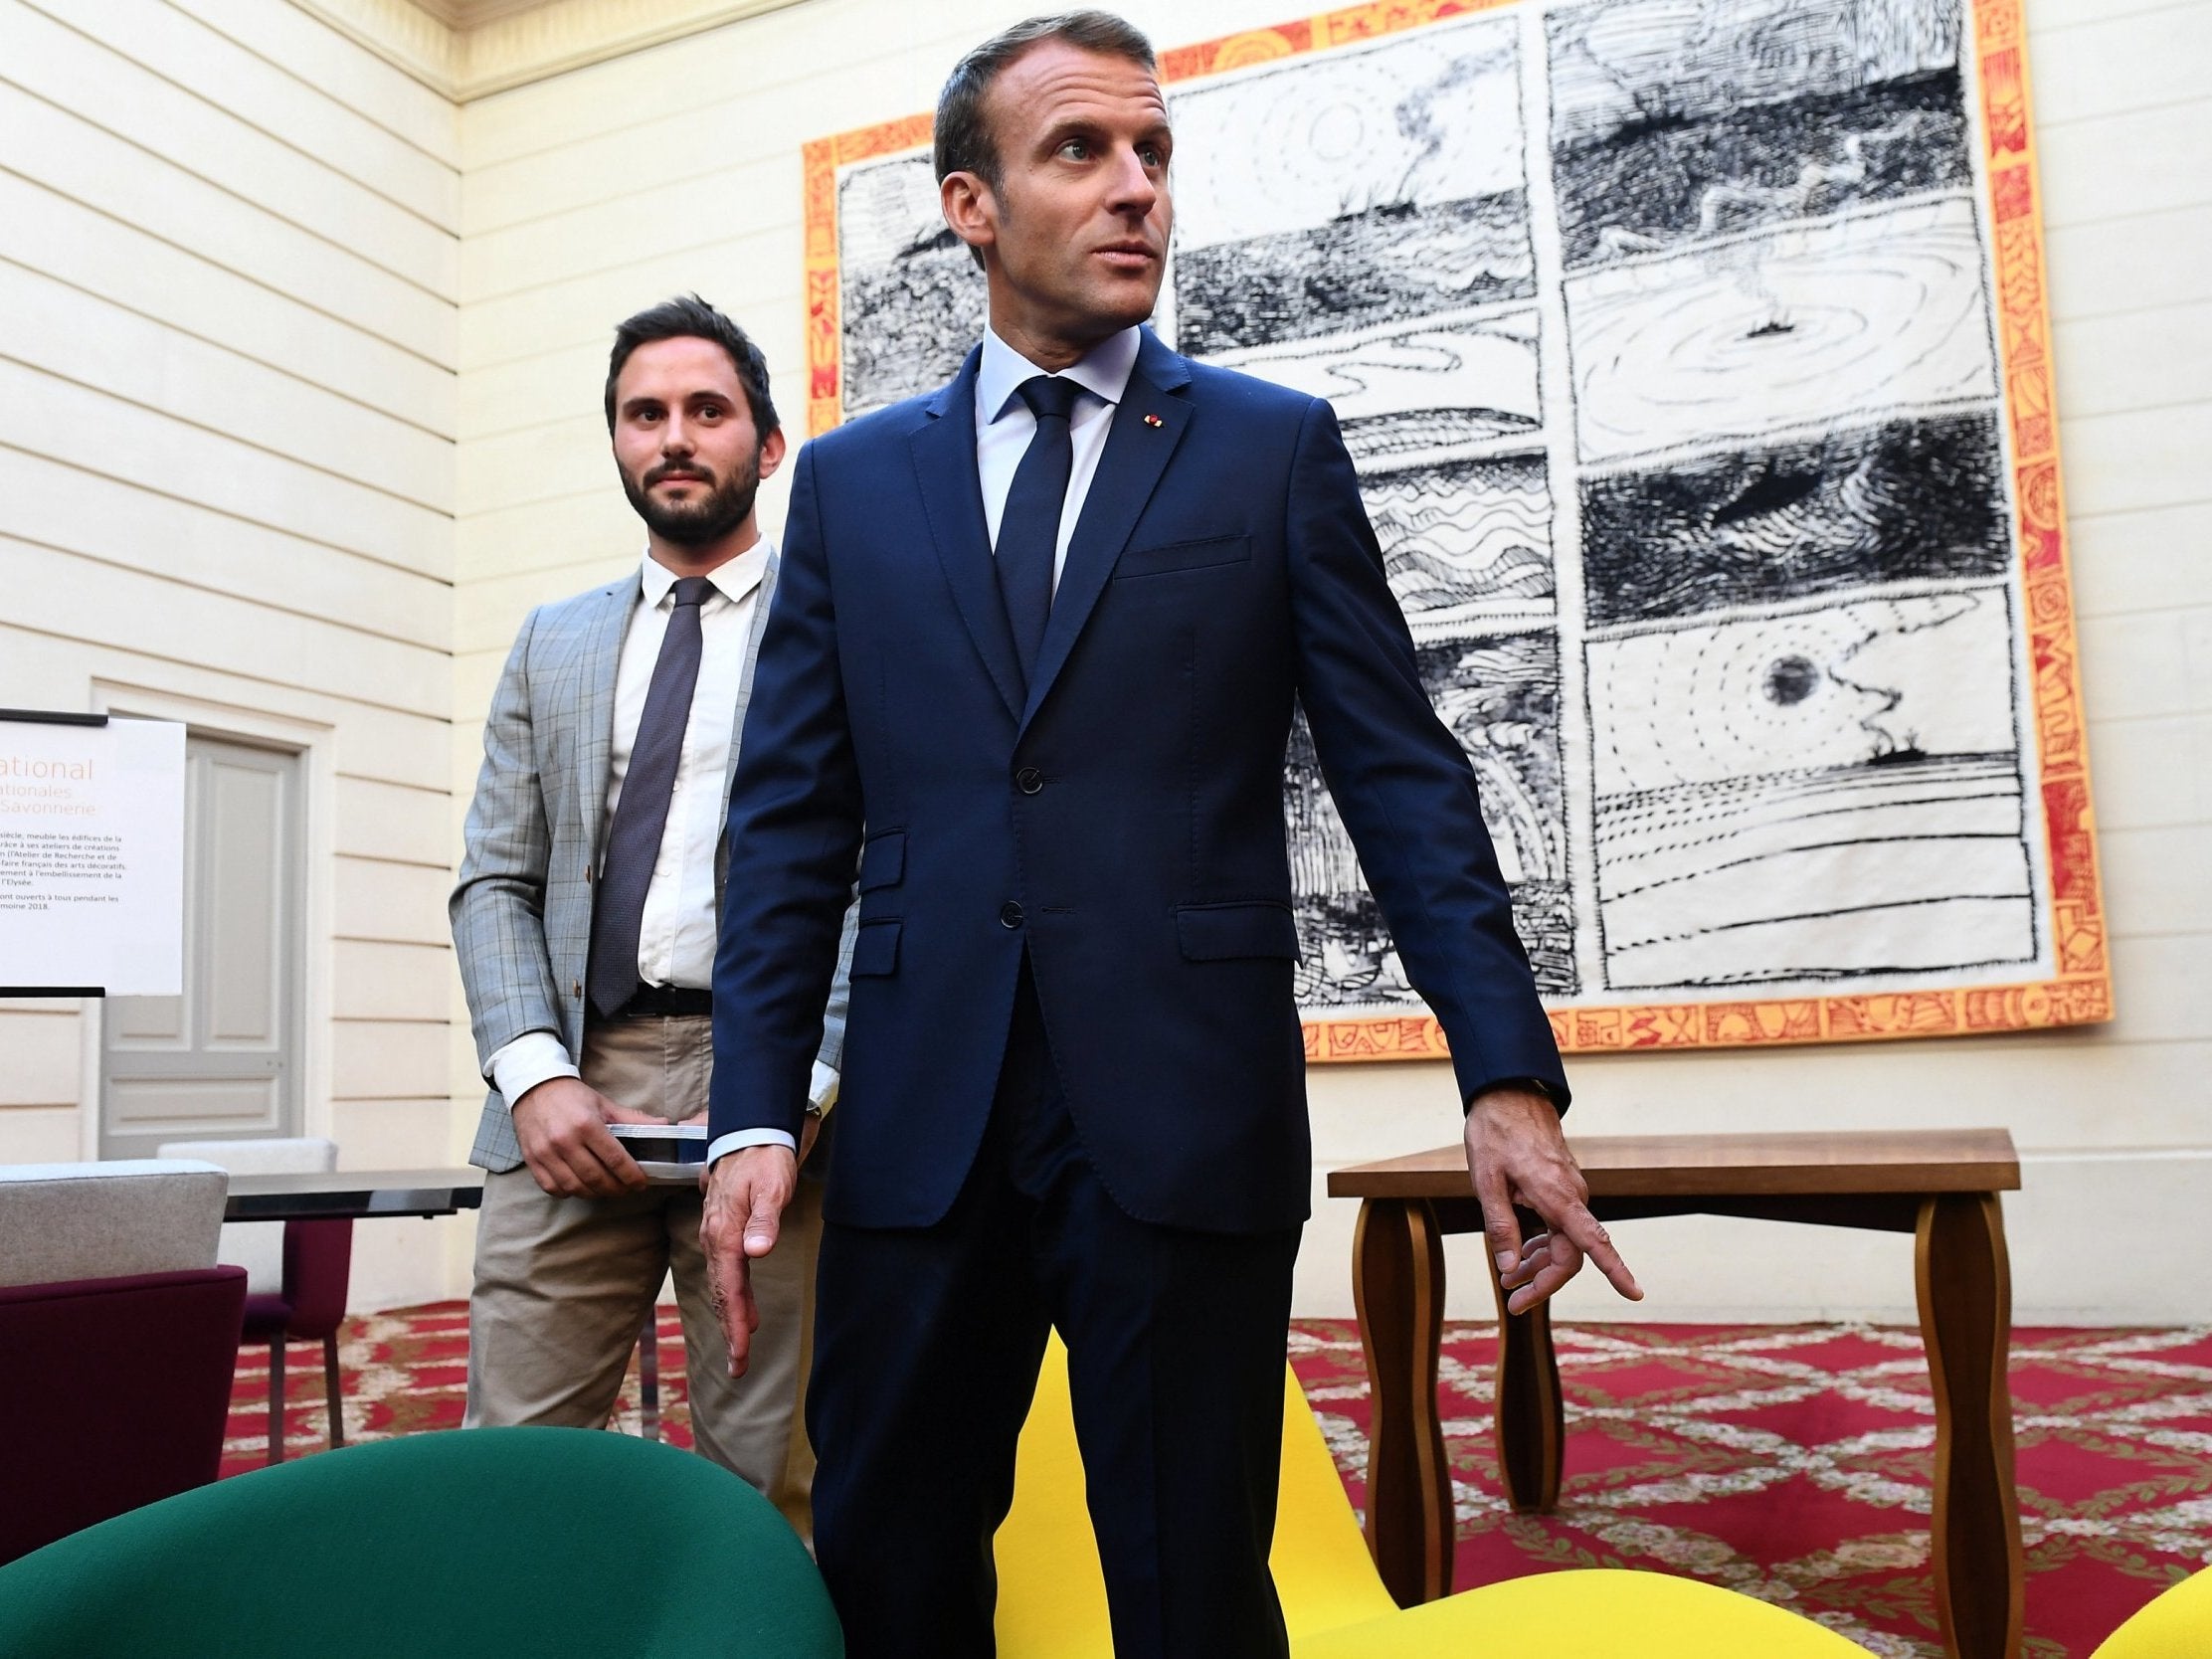 Emmanuel Macron met members of the public at the Elysee Palace